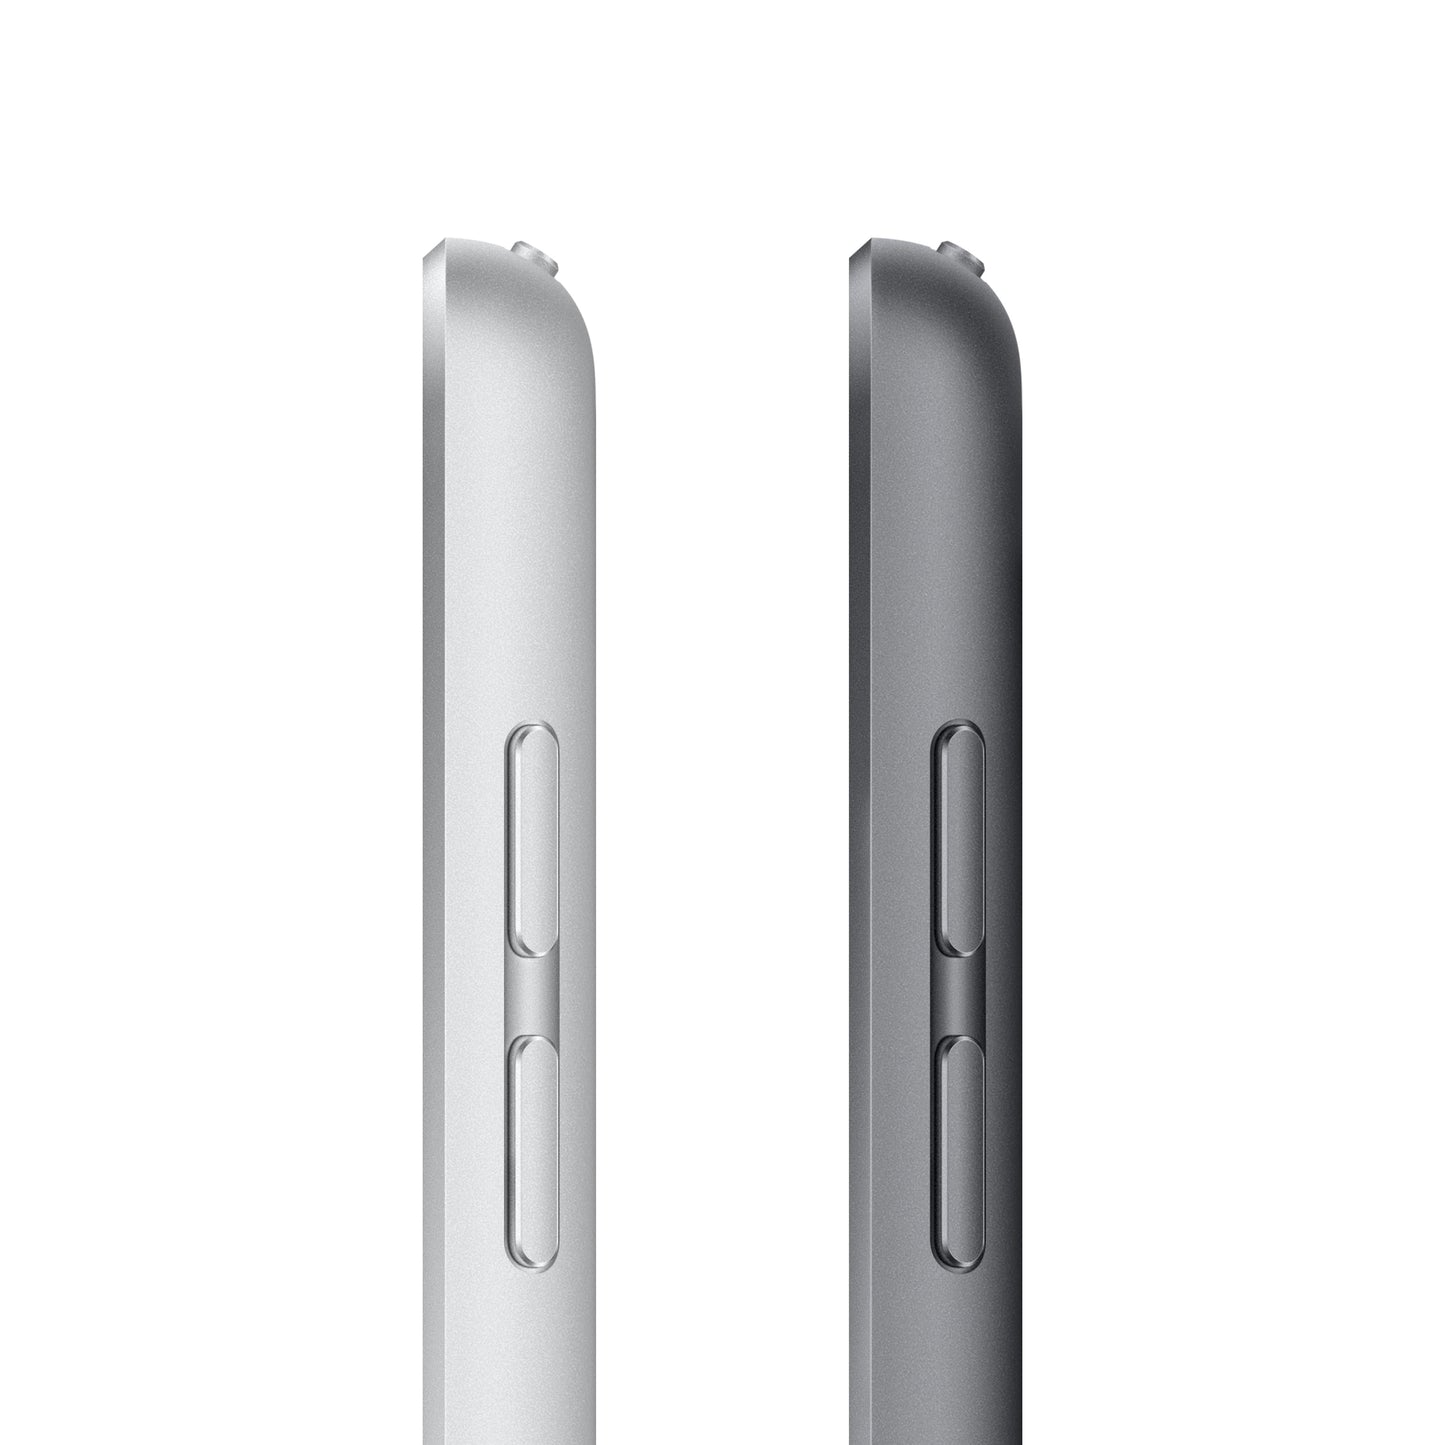 iPad (9th Gen) Wi-Fi + Cellular 64GB - Space Grey